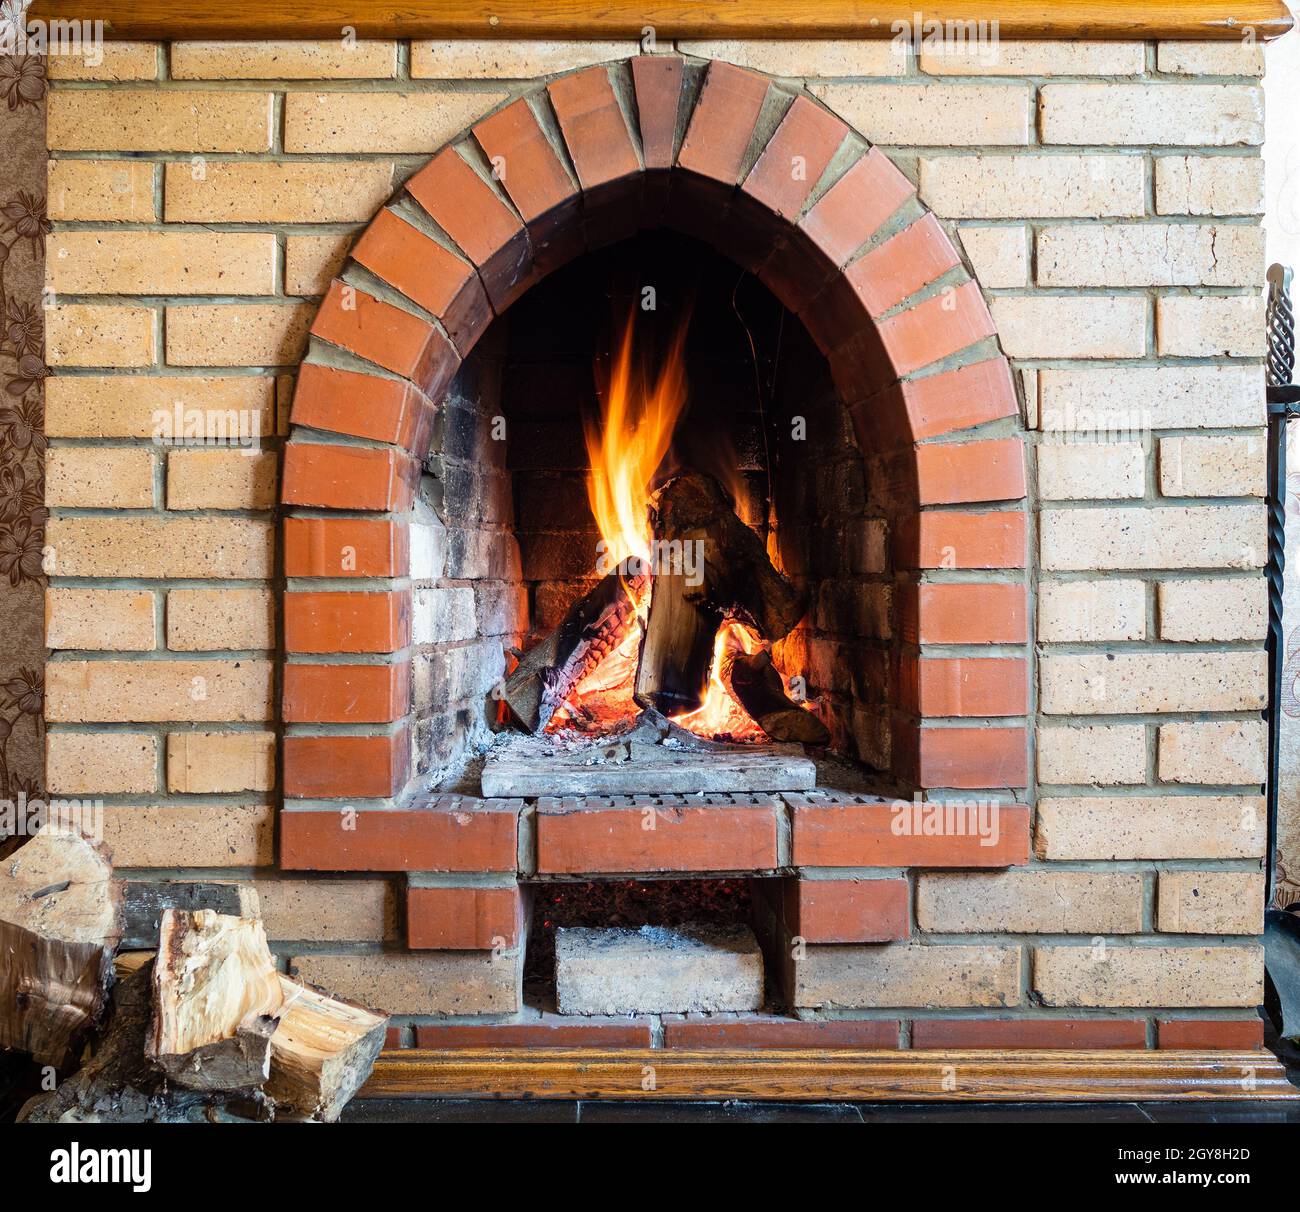 Vorderansicht des Kamins mit Kaminsims im Landhaus an kalten Tagen  Stockfotografie - Alamy